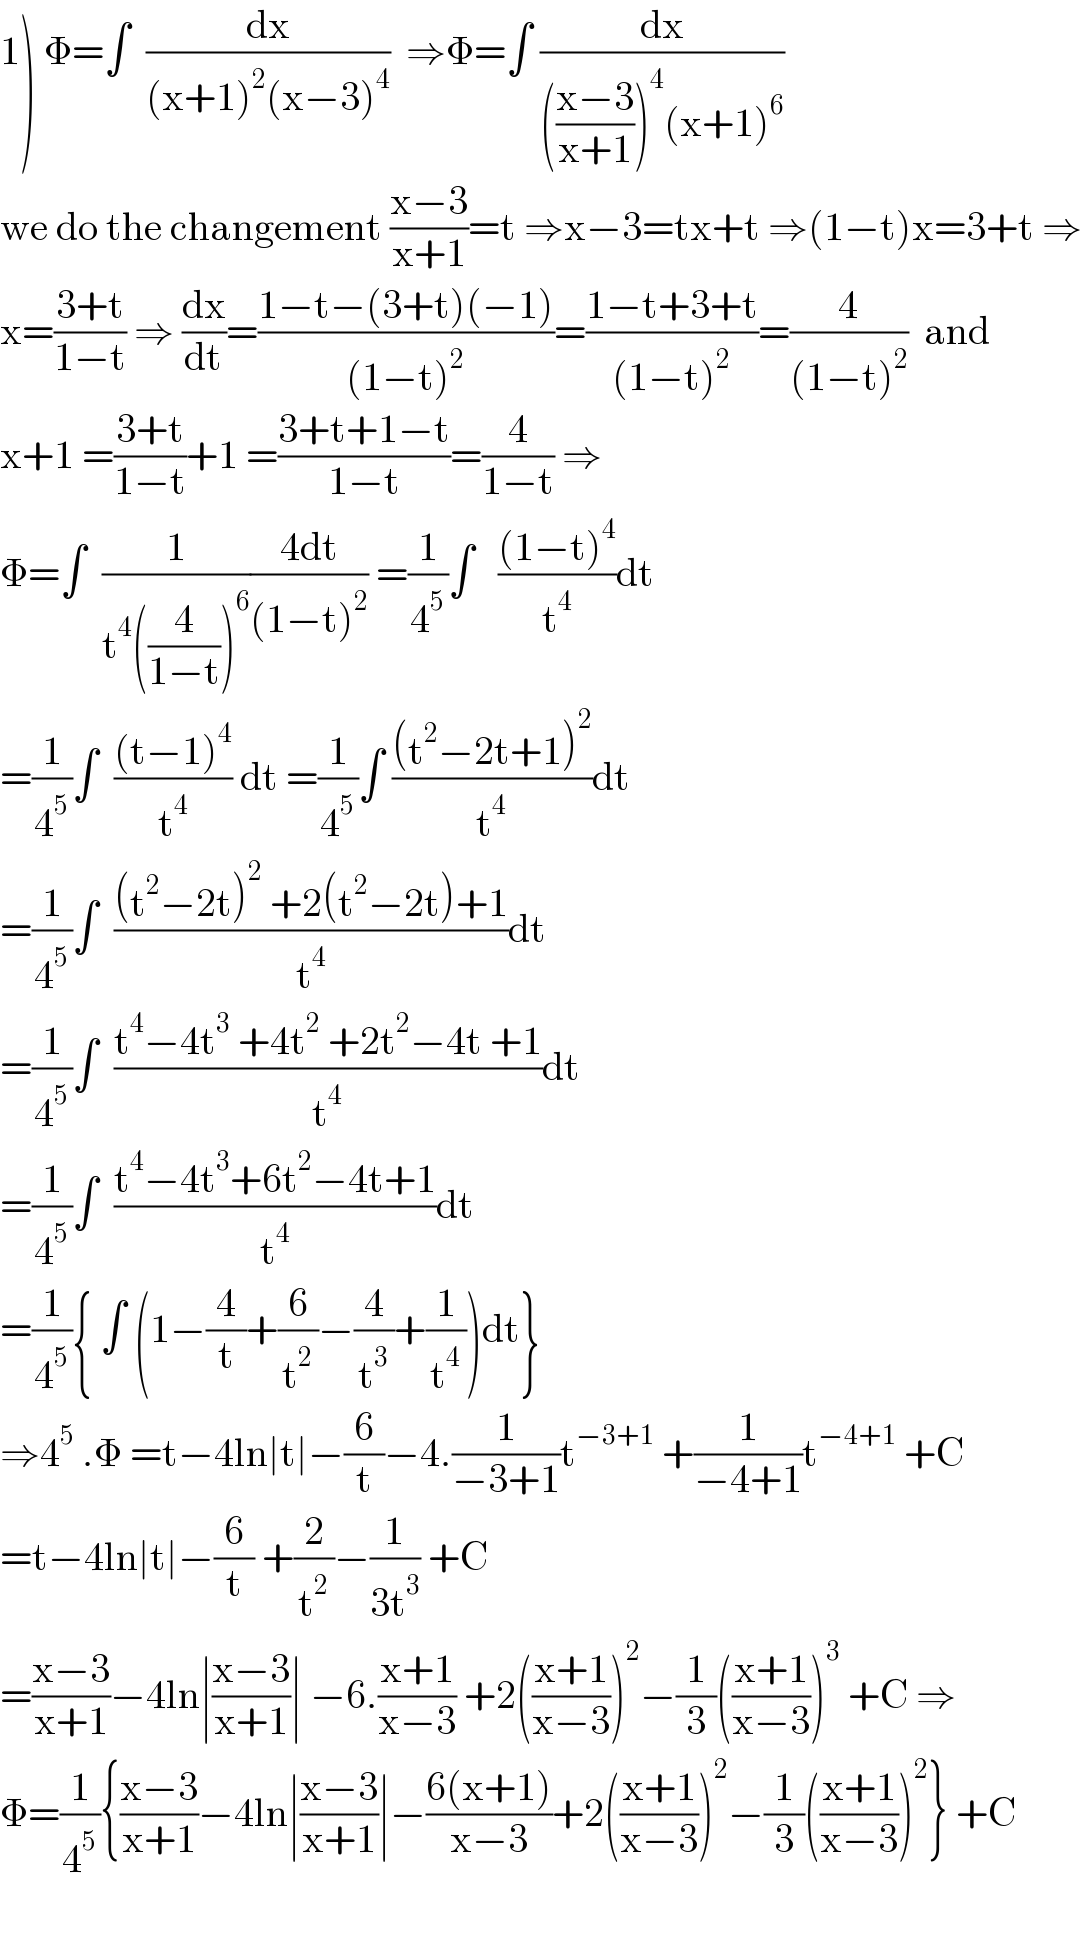 1) Φ=∫  (dx/((x+1)^2 (x−3)^4 ))  ⇒Φ=∫ (dx/((((x−3)/(x+1)))^4 (x+1)^6 ))  we do the changement ((x−3)/(x+1))=t ⇒x−3=tx+t ⇒(1−t)x=3+t ⇒  x=((3+t)/(1−t)) ⇒ (dx/dt)=((1−t−(3+t)(−1))/((1−t)^2 ))=((1−t+3+t)/((1−t)^2 ))=(4/((1−t)^2 ))  and  x+1 =((3+t)/(1−t))+1 =((3+t+1−t)/(1−t))=(4/(1−t)) ⇒  Φ=∫  (1/(t^4 ((4/(1−t)))^6 ))((4dt)/((1−t)^2 )) =(1/4^5 )∫   (((1−t)^4 )/t^4 )dt  =(1/4^5 )∫  (((t−1)^4 )/t^4 ) dt =(1/4^5 )∫ (((t^2 −2t+1)^2 )/t^4 )dt  =(1/4^5 )∫  (((t^2 −2t)^2  +2(t^2 −2t)+1)/t^4 )dt  =(1/4^5 )∫  ((t^4 −4t^3  +4t^2  +2t^2 −4t +1)/t^4 )dt  =(1/4^5 )∫  ((t^4 −4t^3 +6t^2 −4t+1)/t^4 )dt  =(1/4^5 ){ ∫ (1−(4/t)+(6/t^2 )−(4/t^3 )+(1/t^4 ))dt}  ⇒4^5  .Φ =t−4ln∣t∣−(6/t)−4.(1/(−3+1))t^(−3+1)  +(1/(−4+1))t^(−4+1)  +C  =t−4ln∣t∣−(6/t) +(2/t^2 )−(1/(3t^3 )) +C  =((x−3)/(x+1))−4ln∣((x−3)/(x+1))∣ −6.((x+1)/(x−3)) +2(((x+1)/(x−3)))^2 −(1/3)(((x+1)/(x−3)))^3  +C ⇒  Φ=(1/4^5 ){((x−3)/(x+1))−4ln∣((x−3)/(x+1))∣−((6(x+1))/(x−3))+2(((x+1)/(x−3)))^2 −(1/3)(((x+1)/(x−3)))^2 } +C    